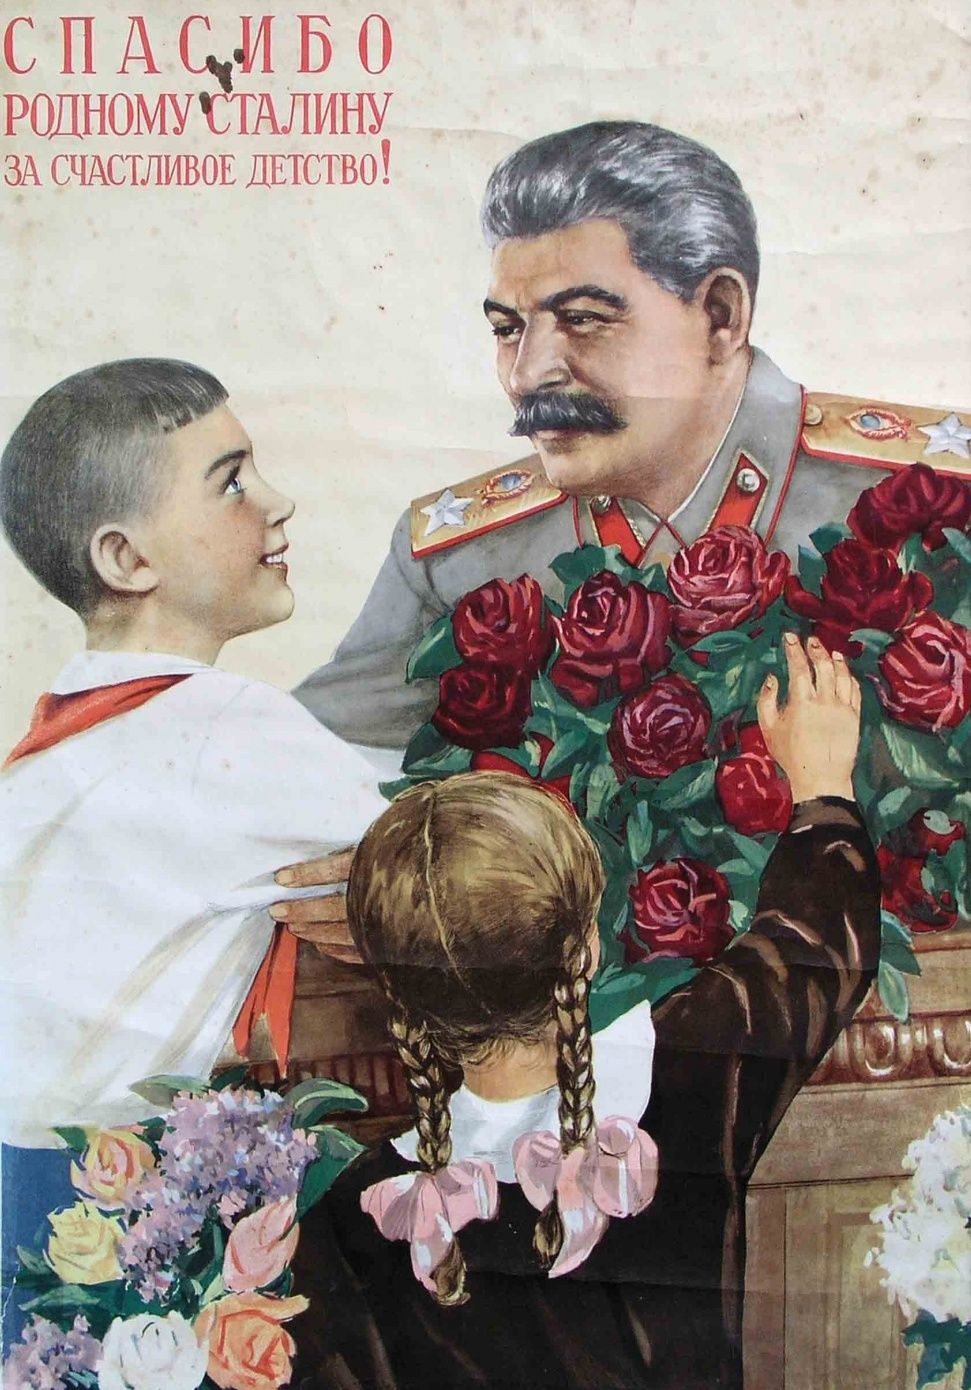 "Dziękujemy drogiemu Stalinowi za szczęśliwe dzieciństwo"